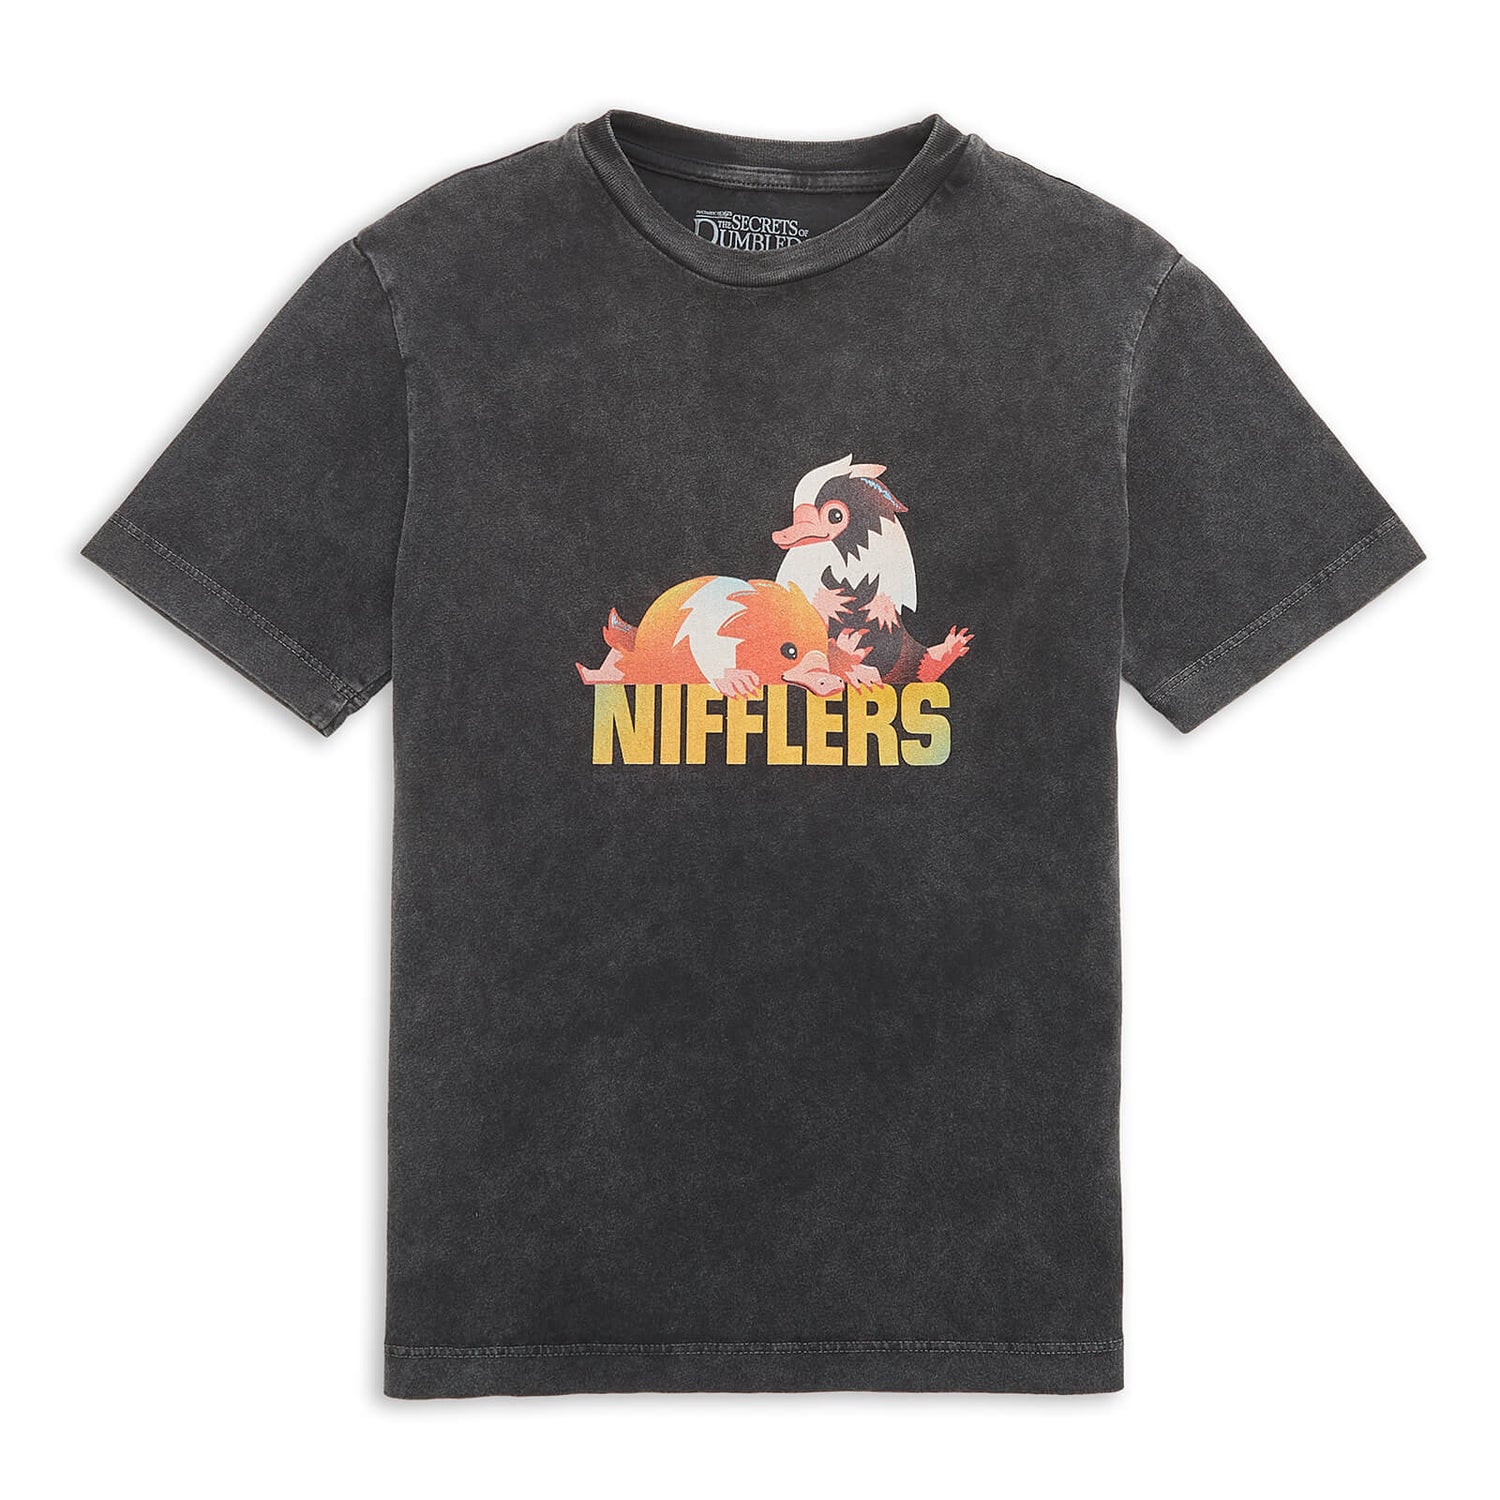 Fantastic Beasts Nifflers Kids' T-Shirt - Charcoal